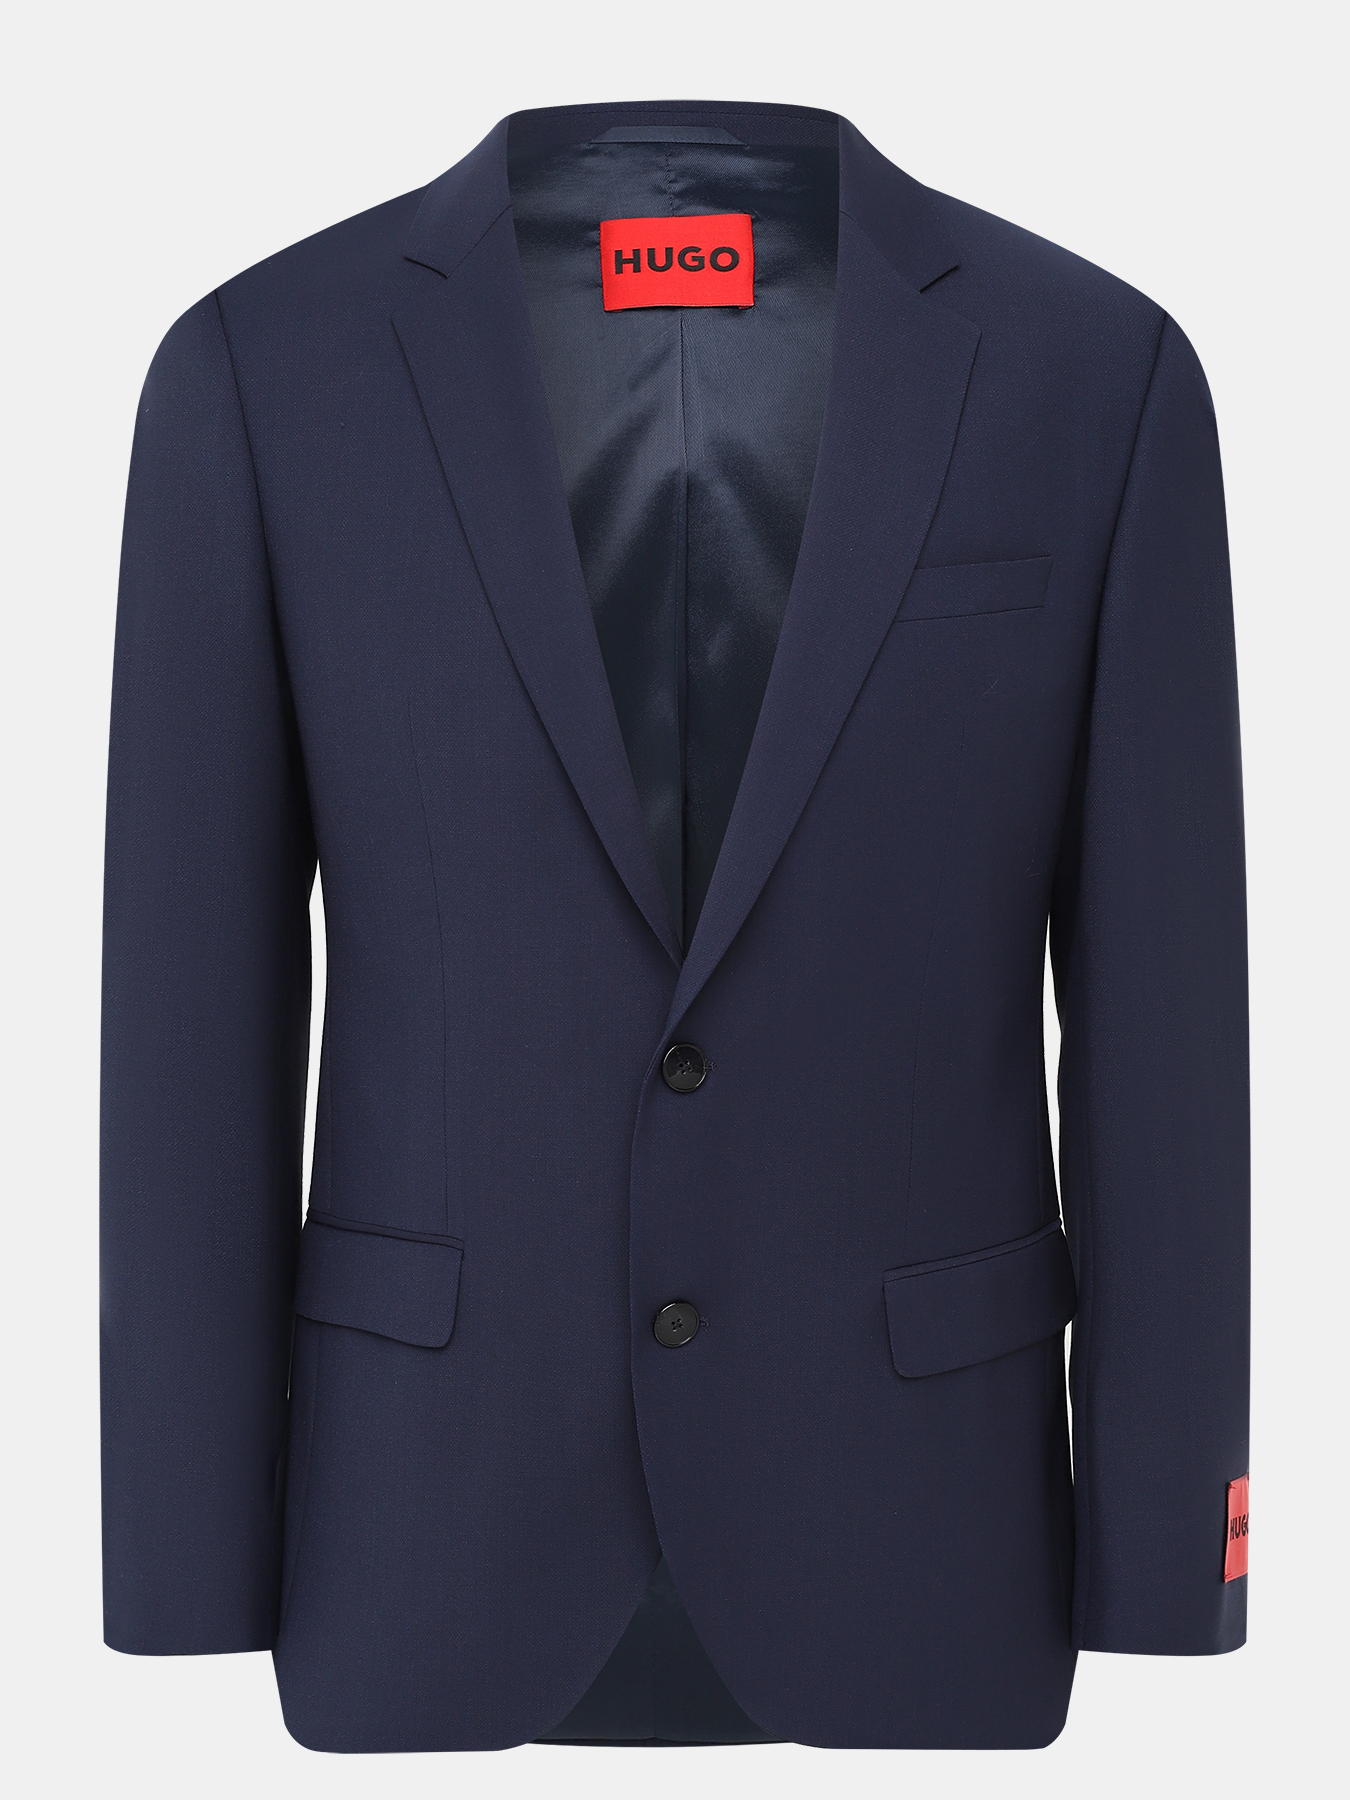 Пиджак Henry HUGO 421144-026, цвет темно-синий, размер 50